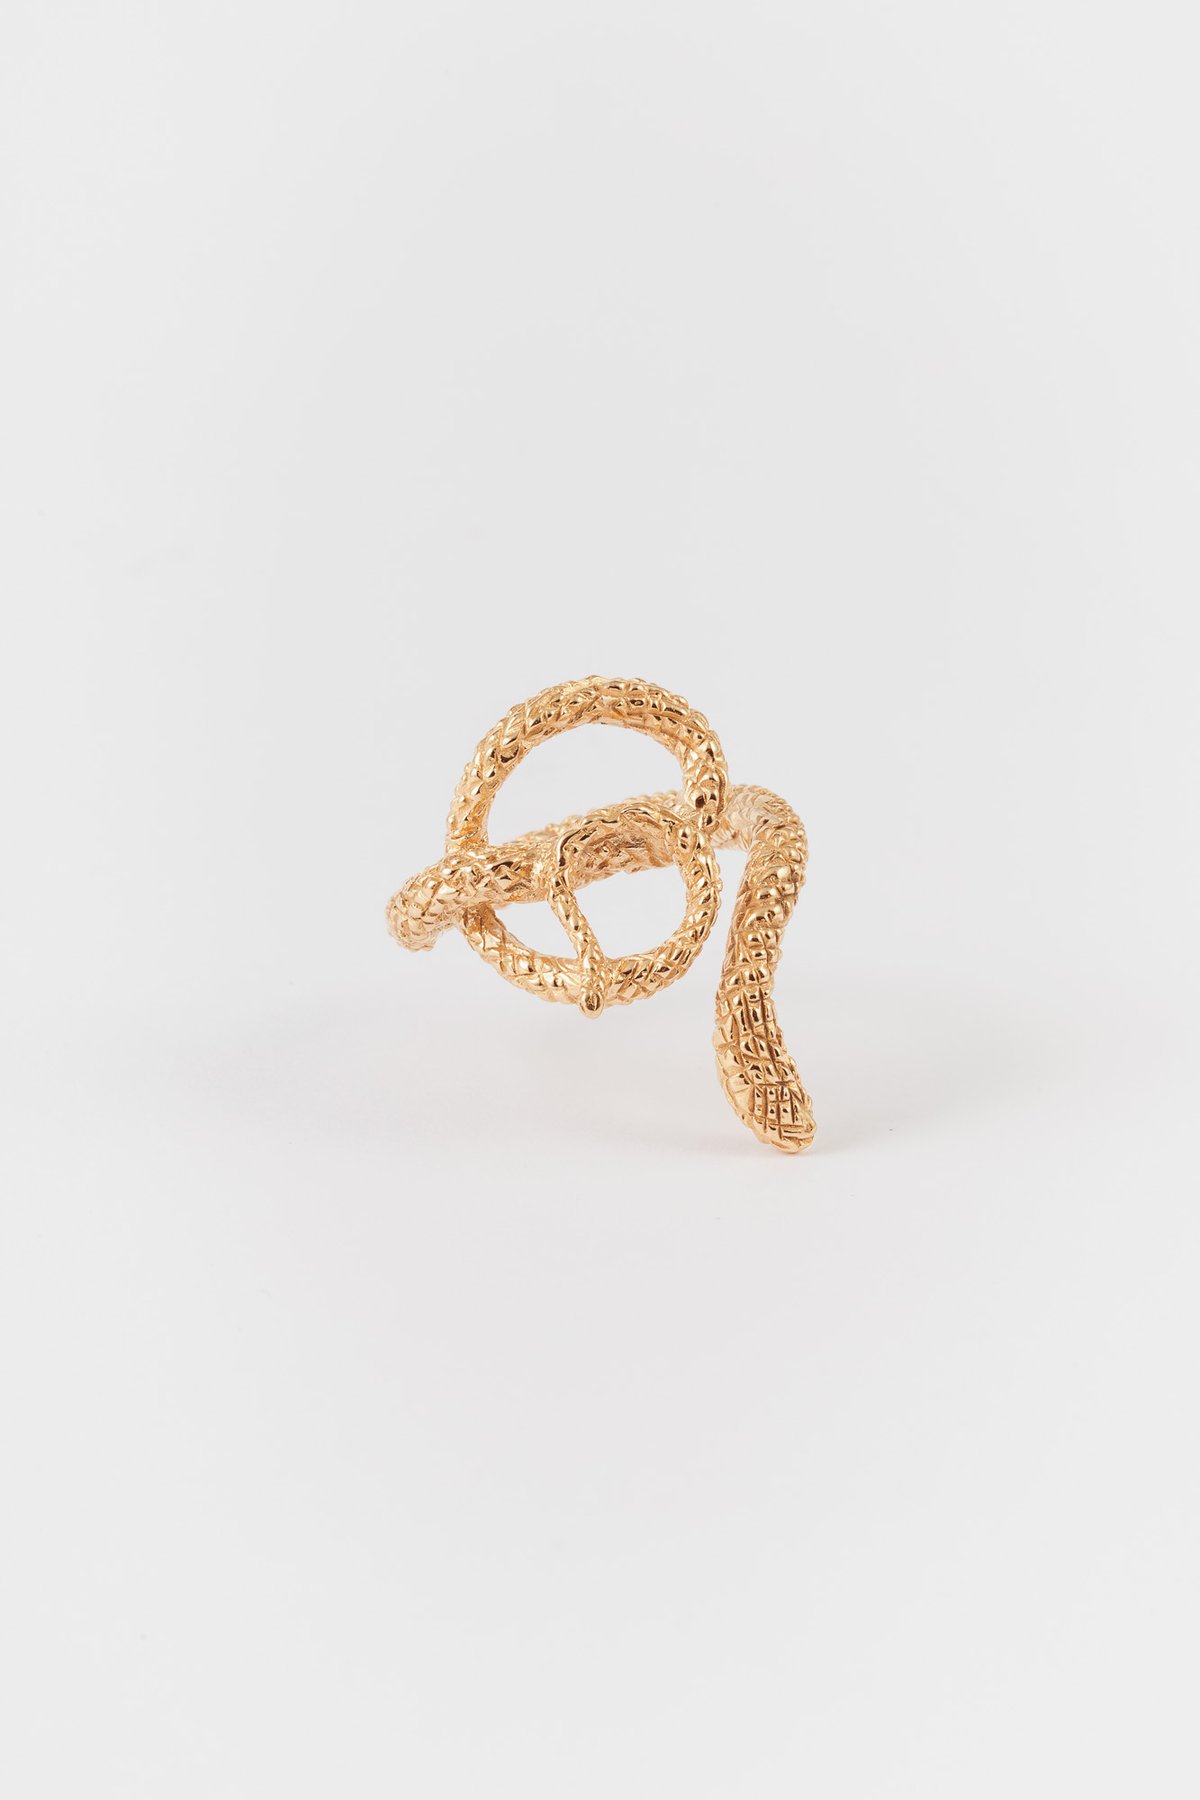 Image of snake ring